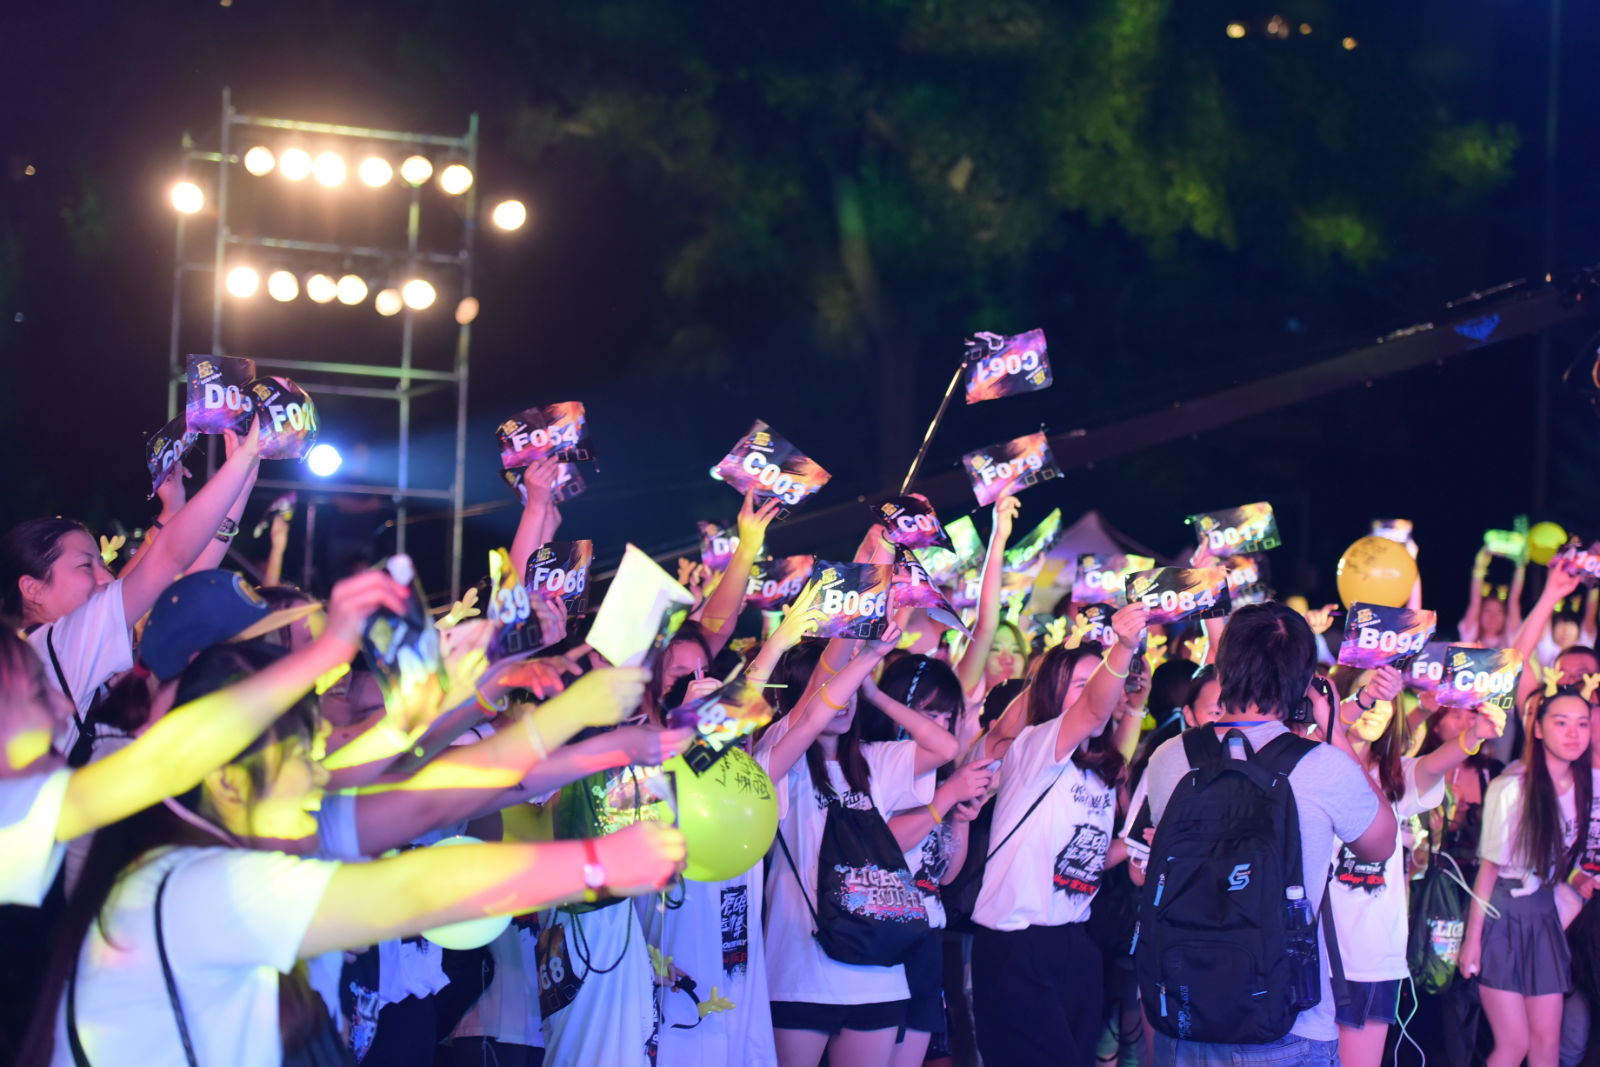 而鹿晗运动季的玩法并不止于社交网站的在线互动，它带来的运动热潮更是燃到了生活中。8月27日“鹿晗运动季”之“Light Run+1”荧光跑活动在北京朝阳公园举办，线上征集的跑者齐聚现场，每人免费获得荧光跑装备，在有趣的氛围中享受了五公里的运动。